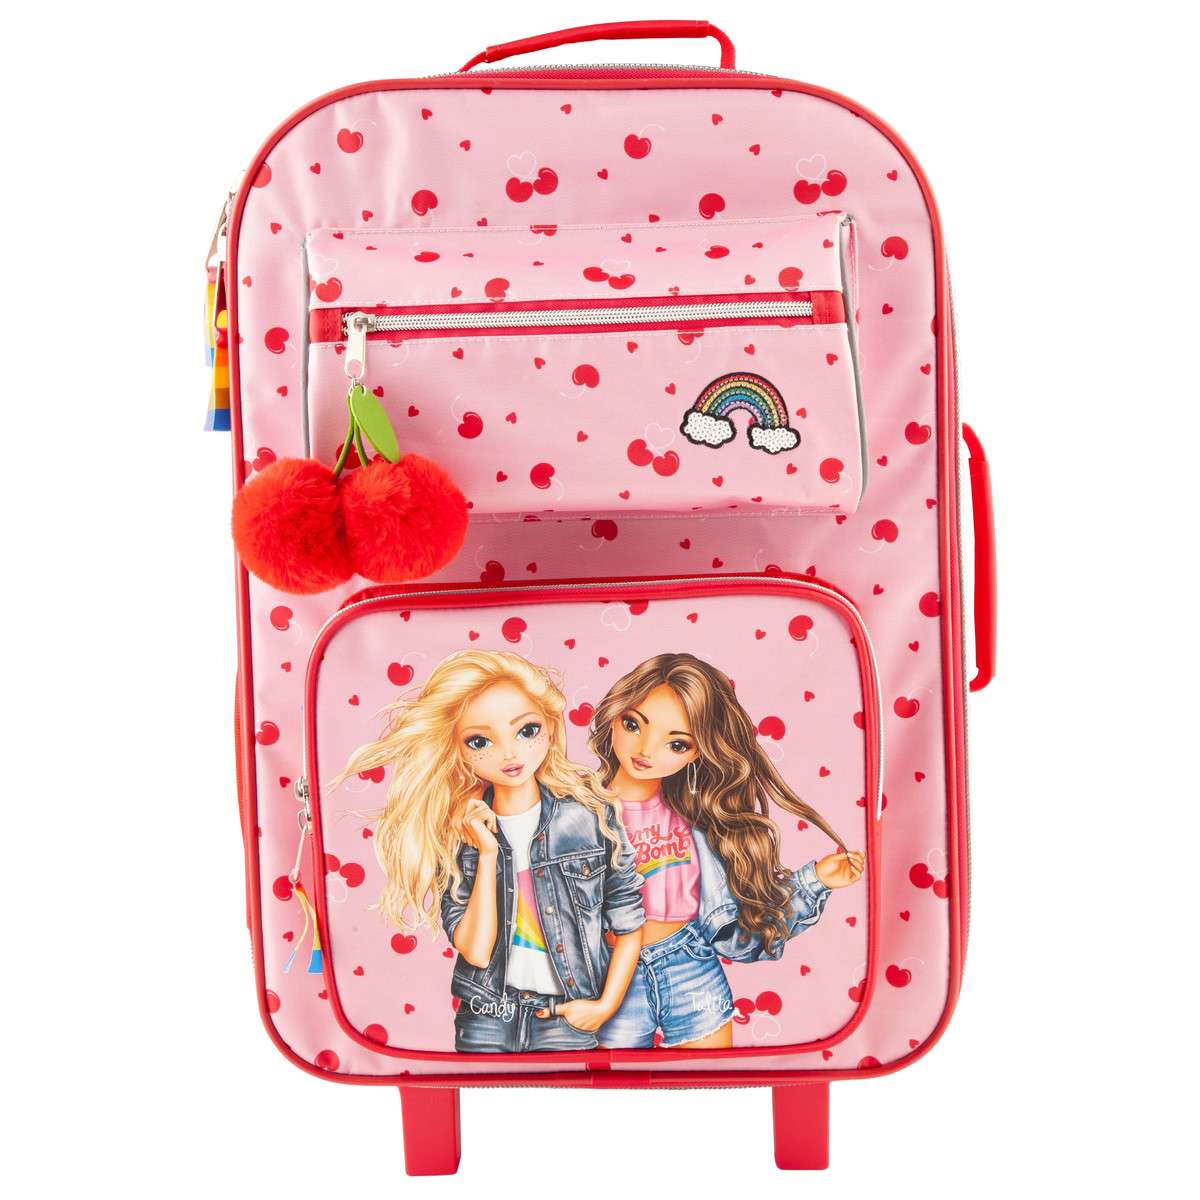 Top Model - Suitcase - Cherry Bomb (0410994)